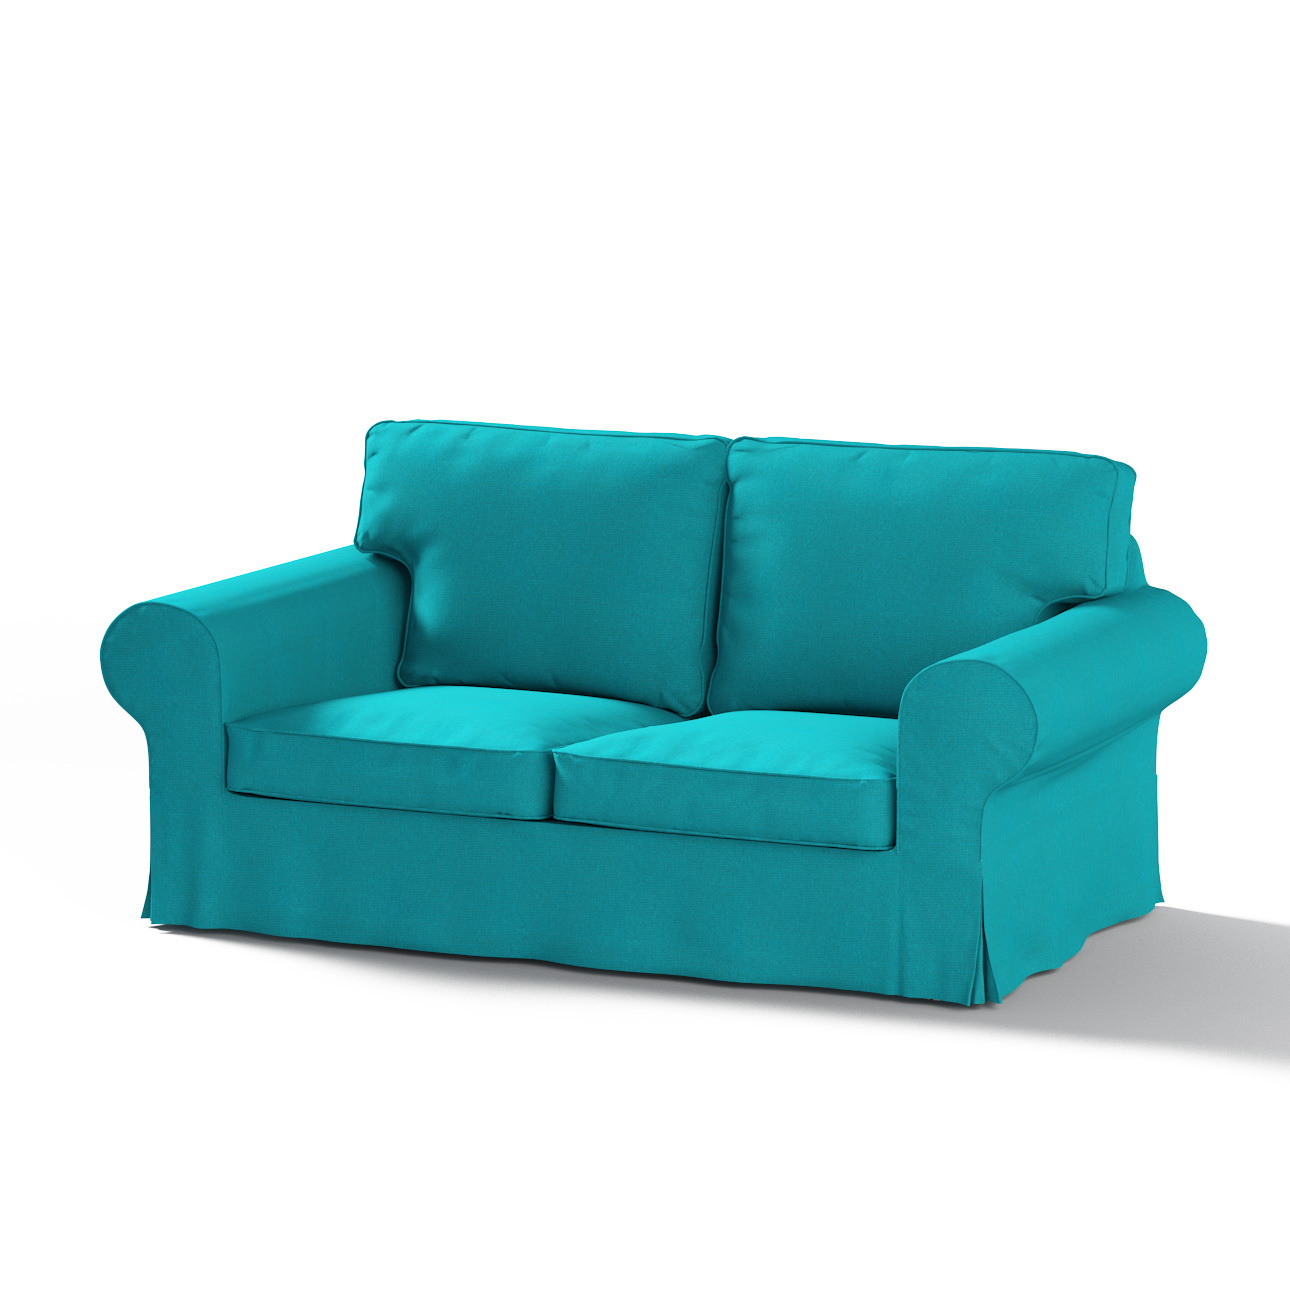 Bezug für Ektorp 2-Sitzer Sofa nicht ausklappbar, türkis, Sofabezug für  Ek günstig online kaufen